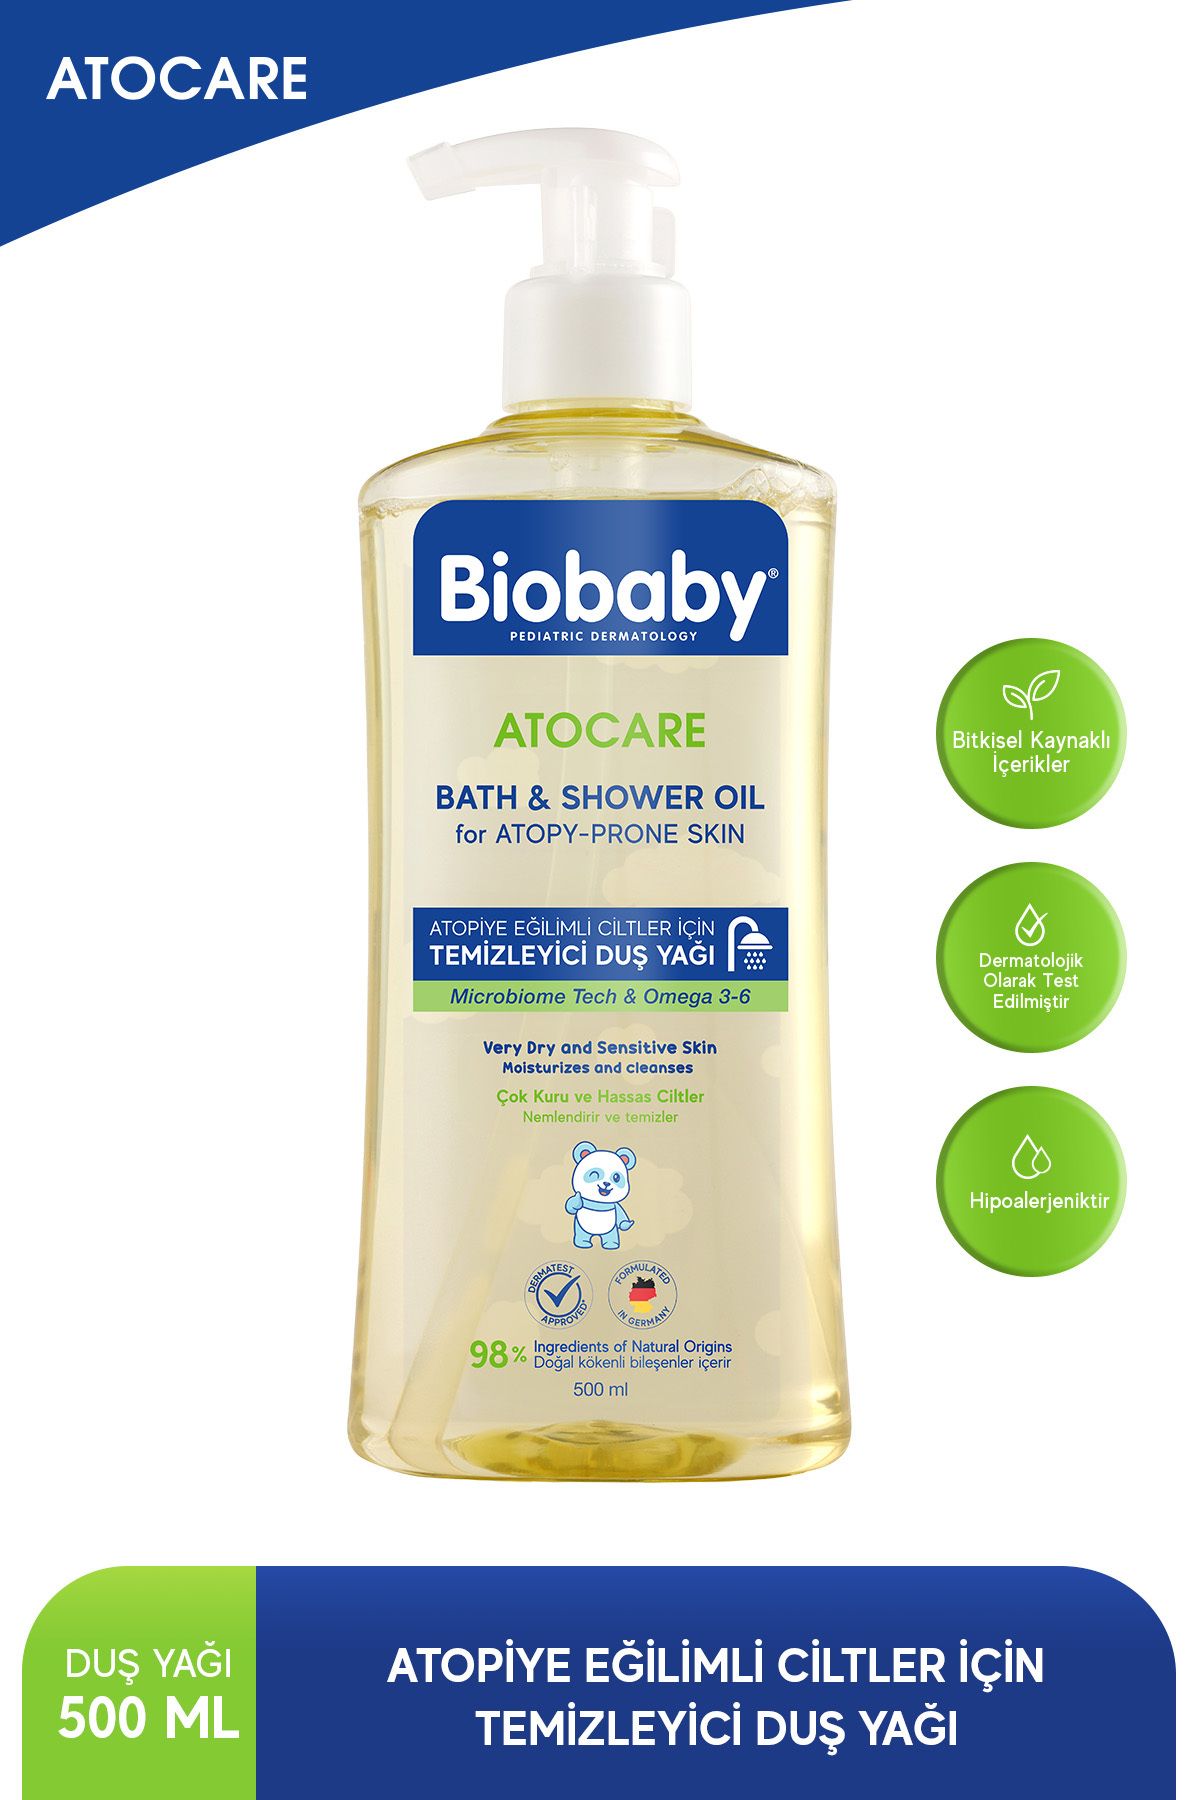 Biobaby Atocare Atpoi Eğilimli Ciltler İçin Temizleyici Duş Yağı 500 Ml Seramid Prebiyotik Omega 3 - 6 Yulaf